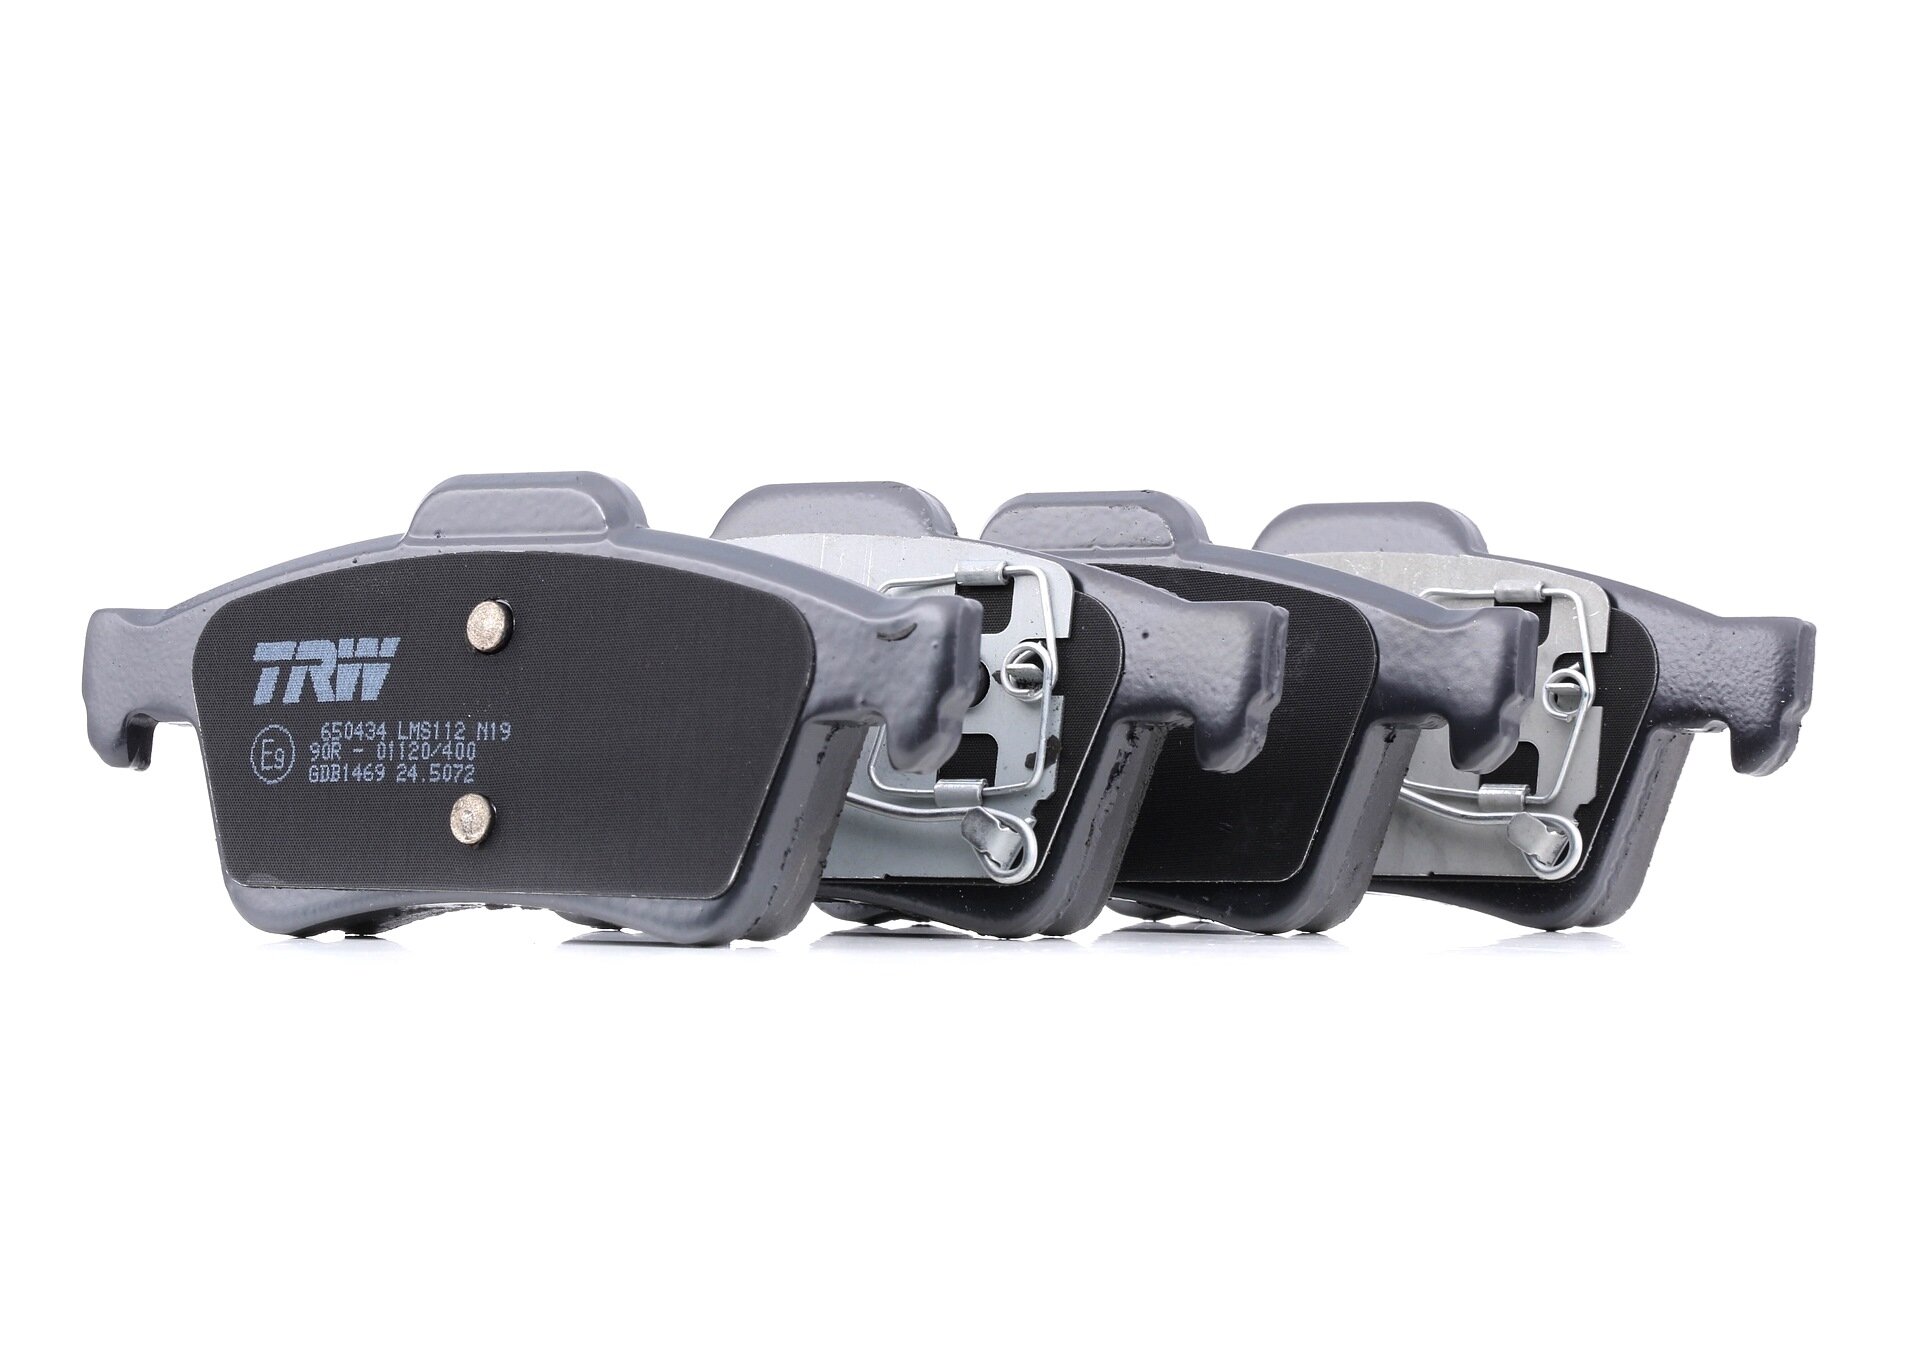 Колодки тормозные дисковые задние для Рено Латитьюд 2010-2015 год выпуска (Renault Latitude) TRW GDB1469